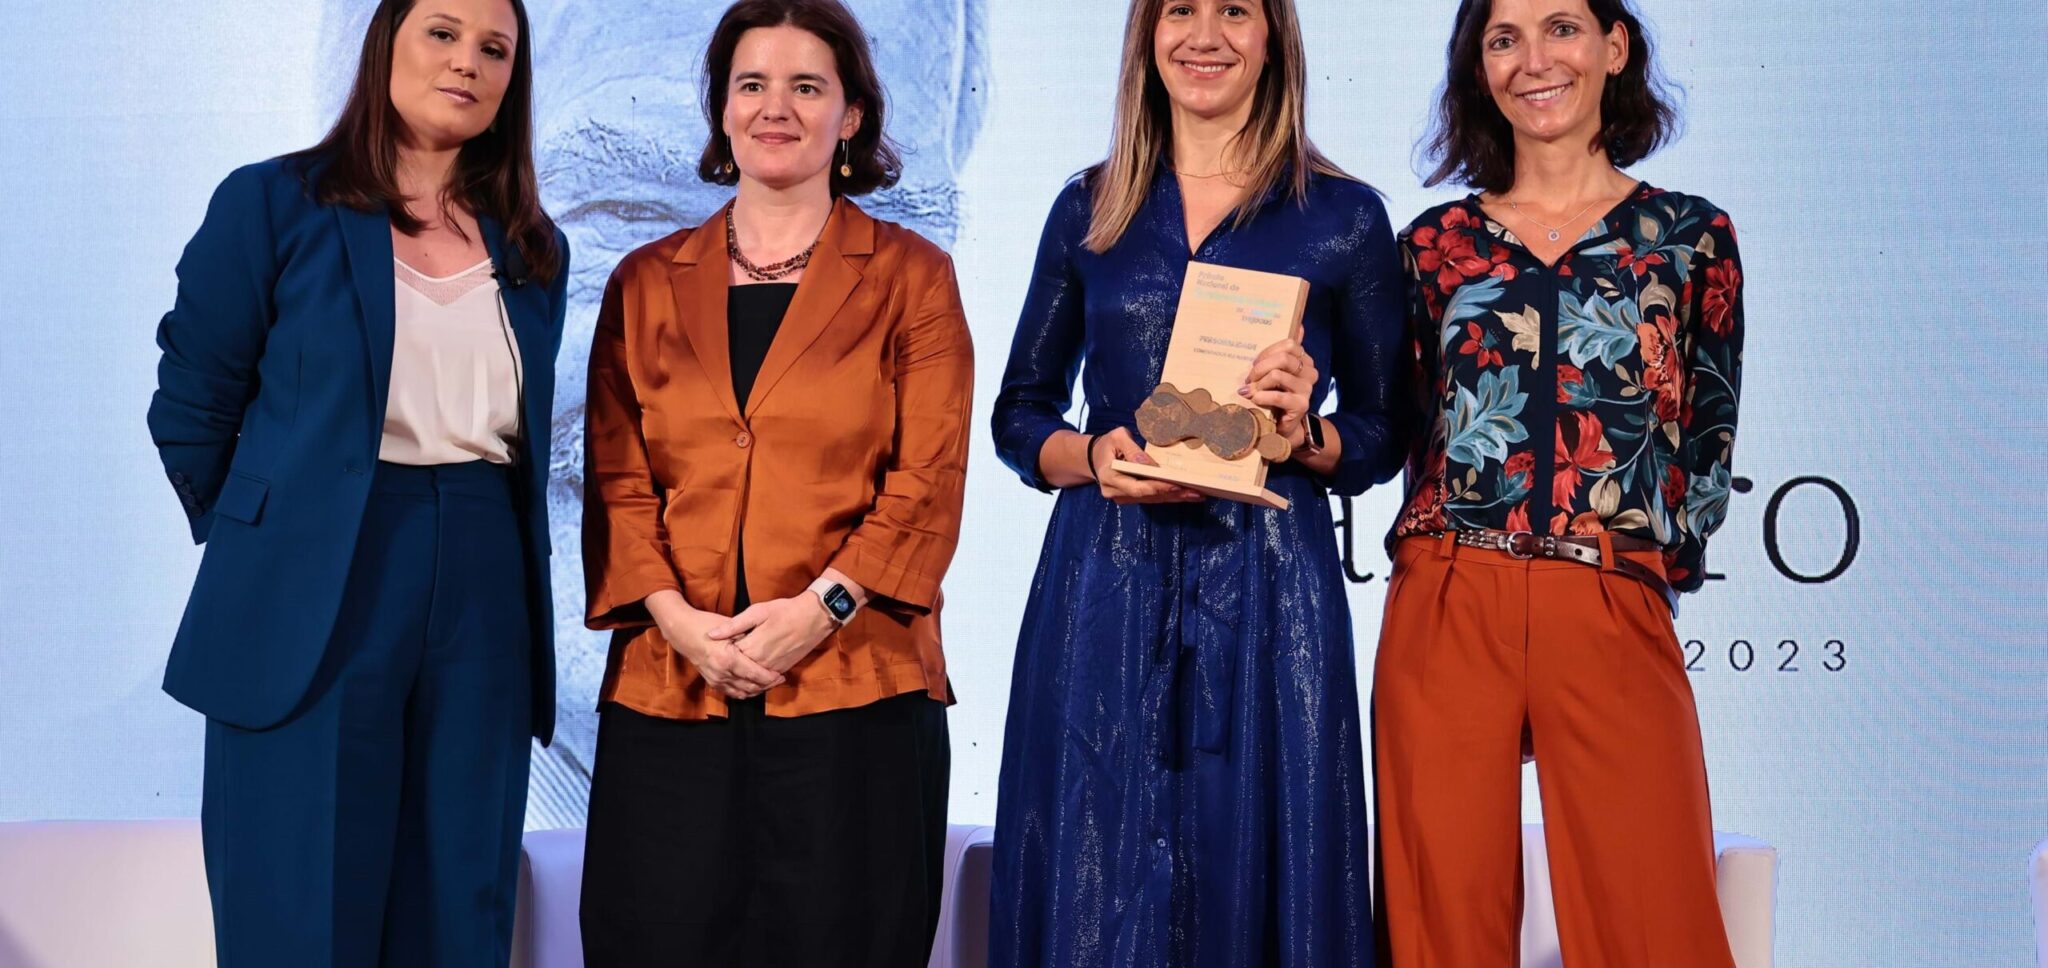 premio-nacional-de-sustentabilidade-entrega-21-premios